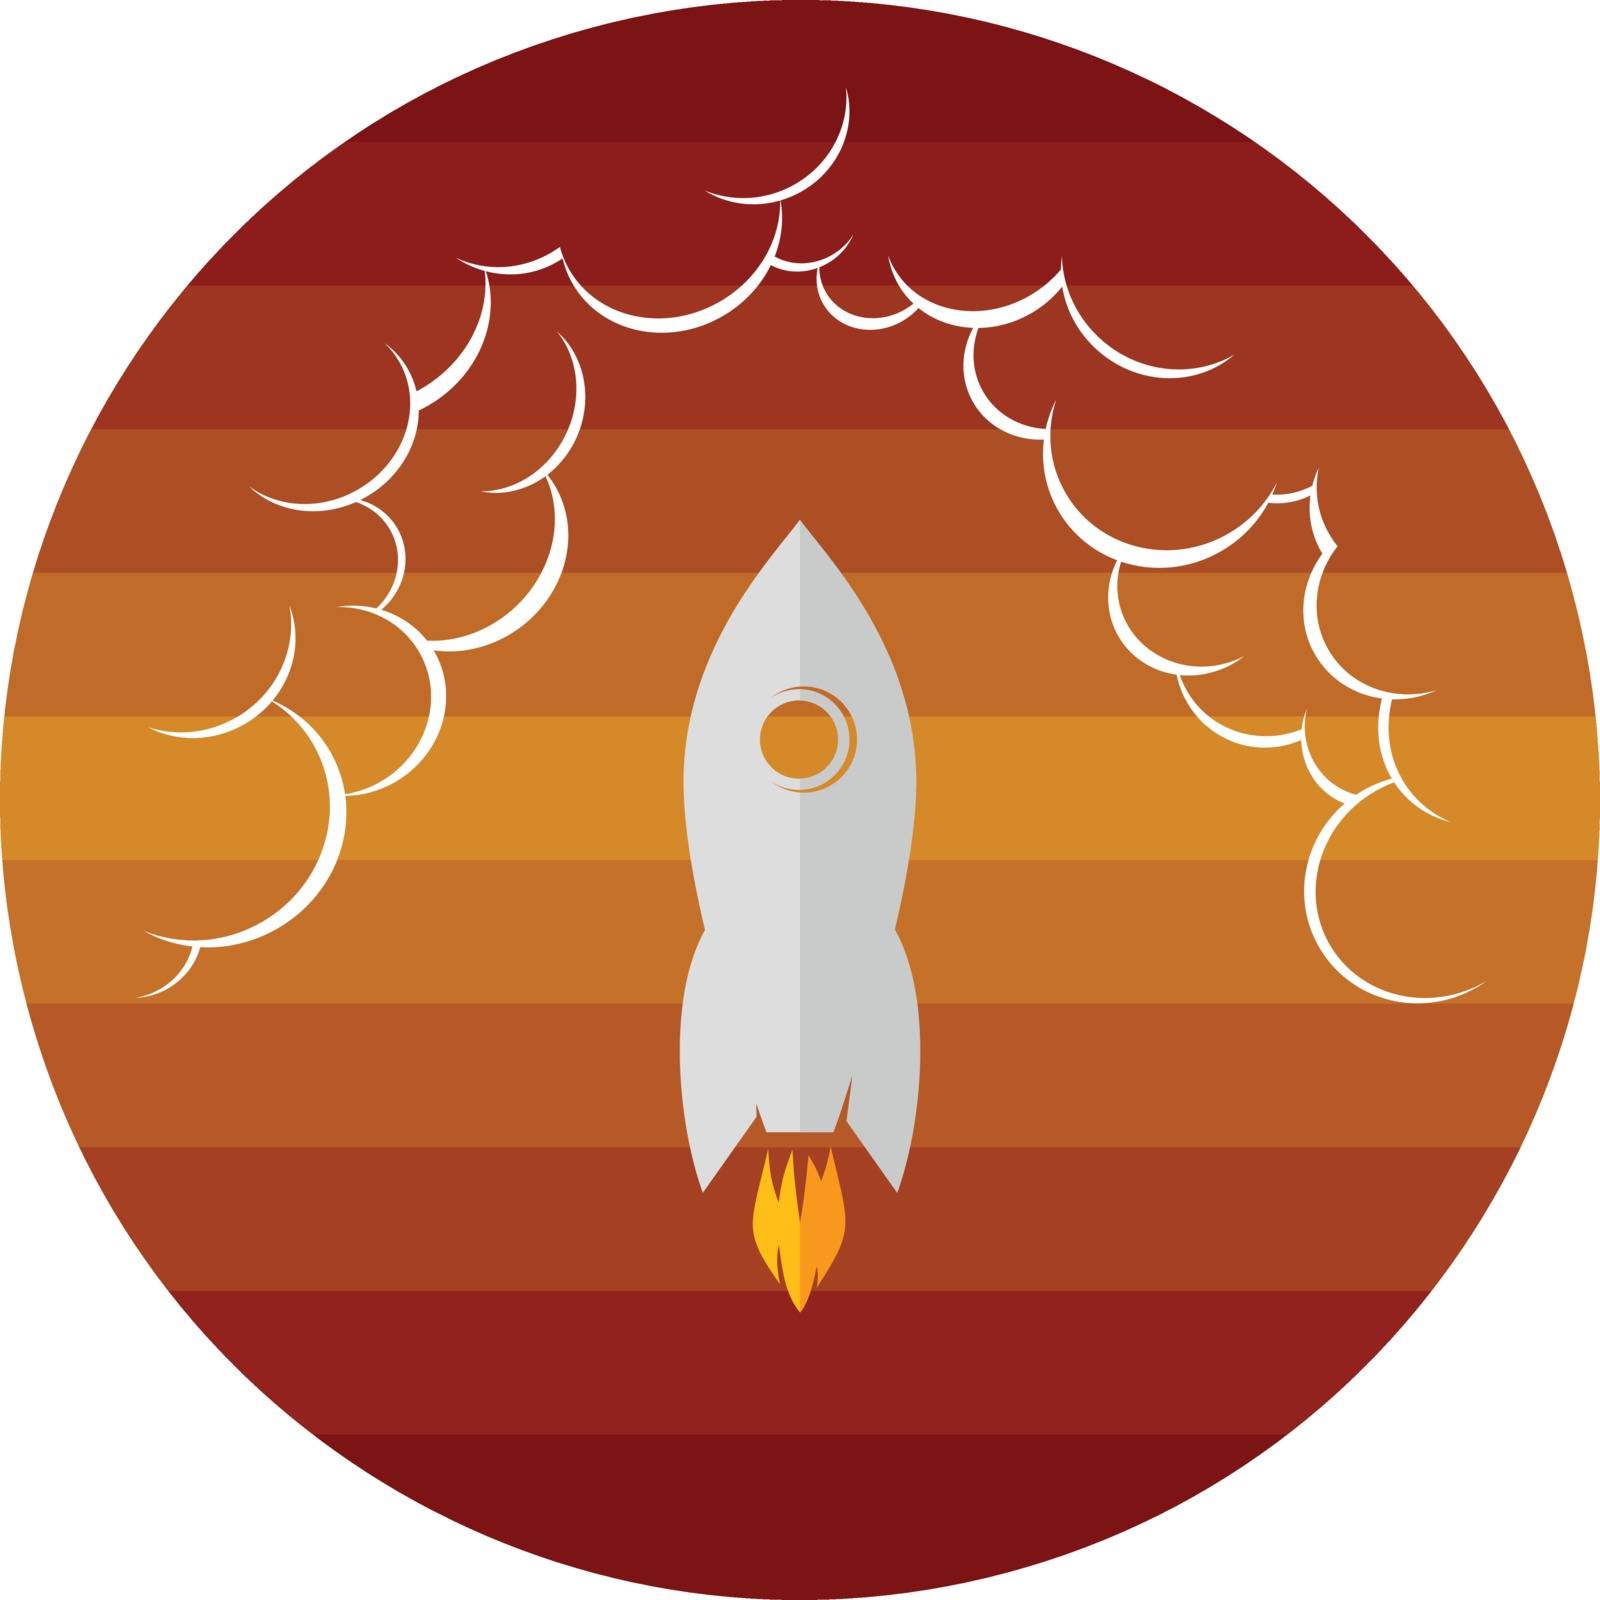 space exploration shuttle ship logo icon sign vector art